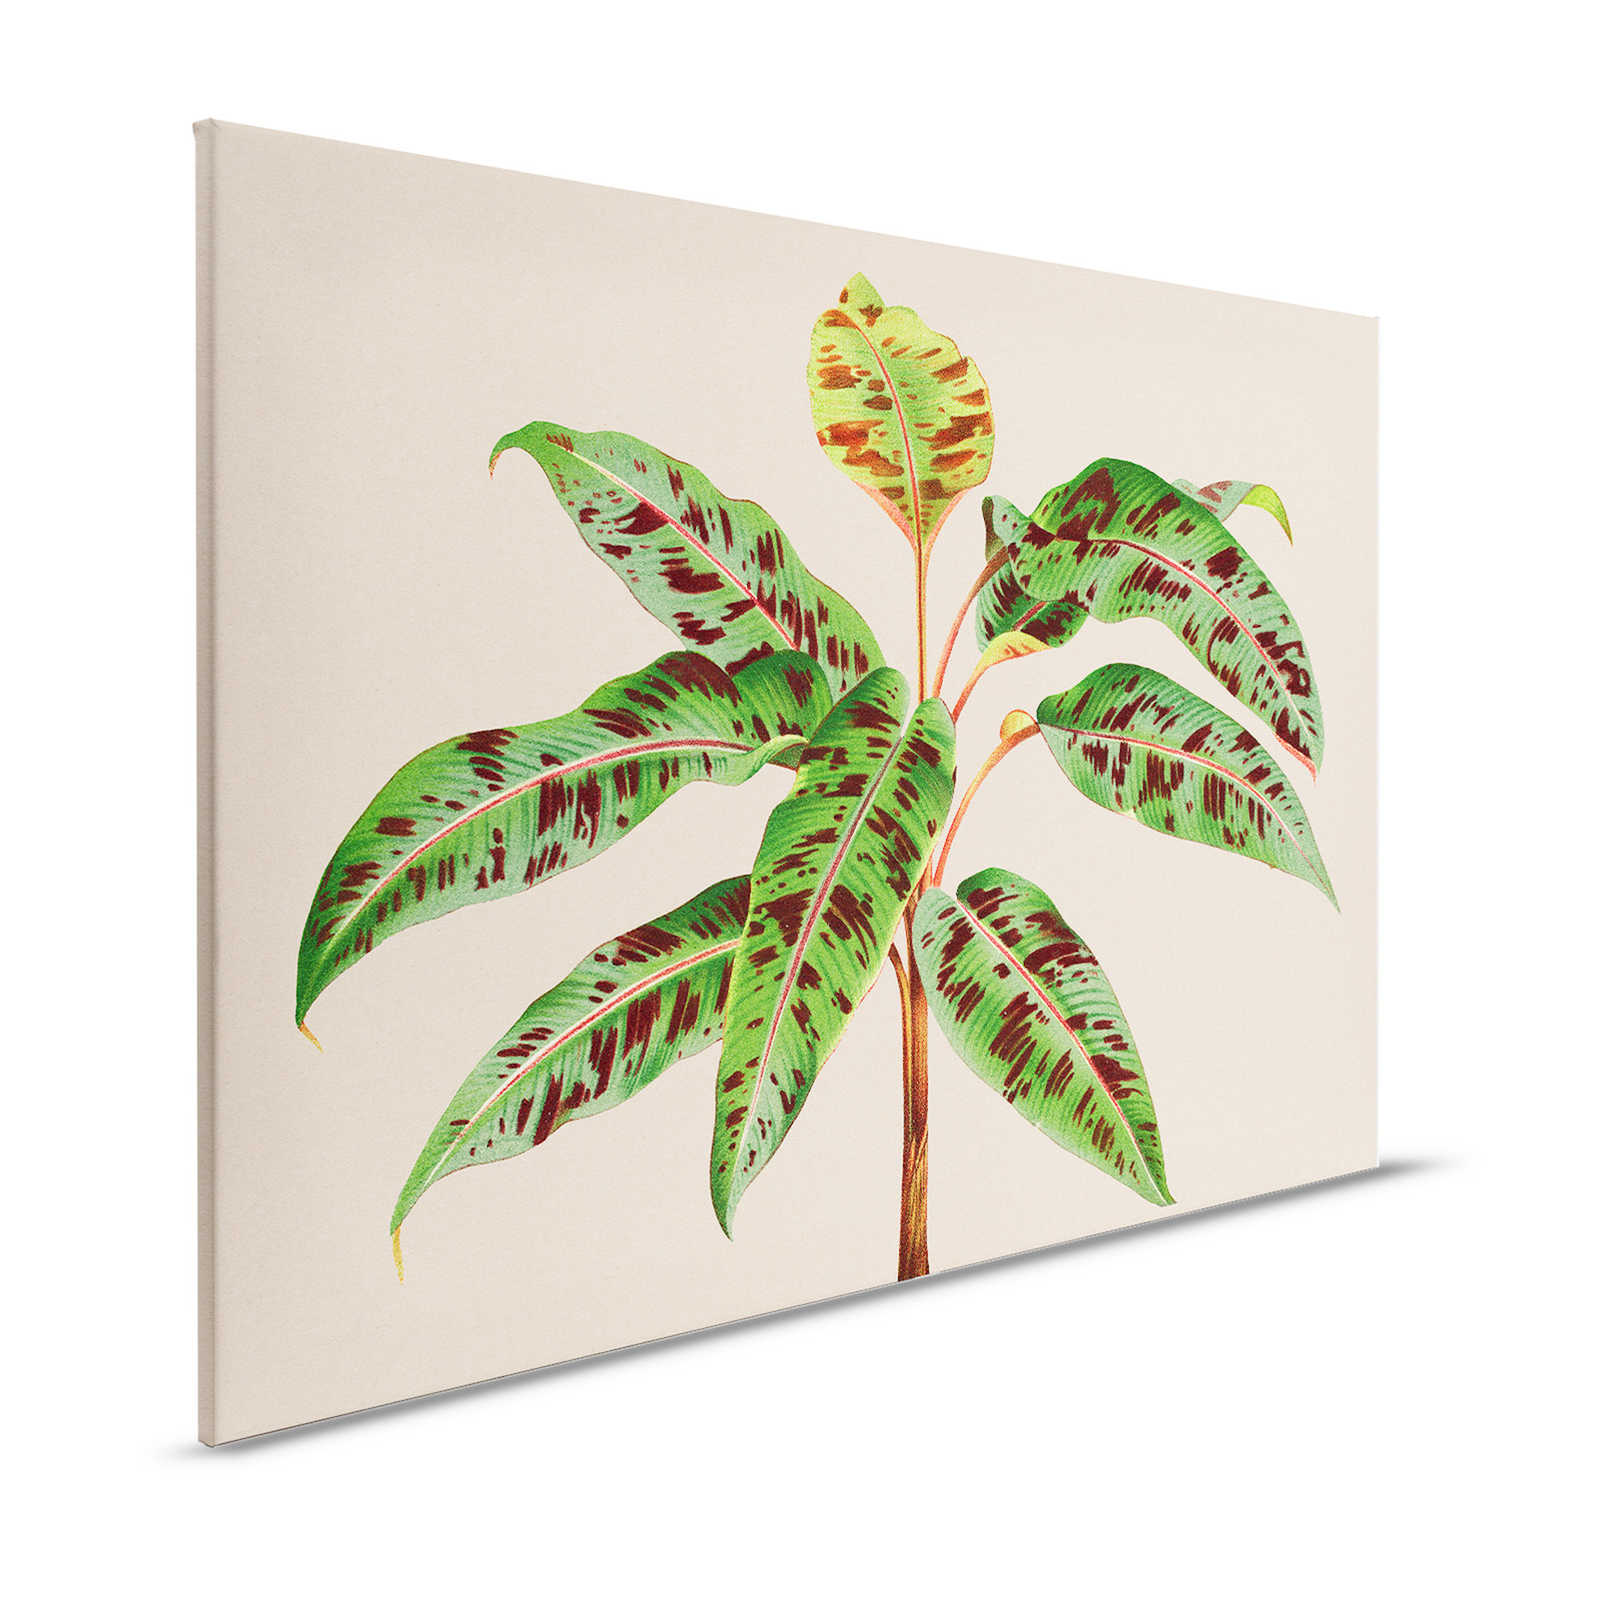 Leaf Garden 4 - Quadro su tela con piante tropicali e foglie verdi - 1,20 m x 0,80 m
